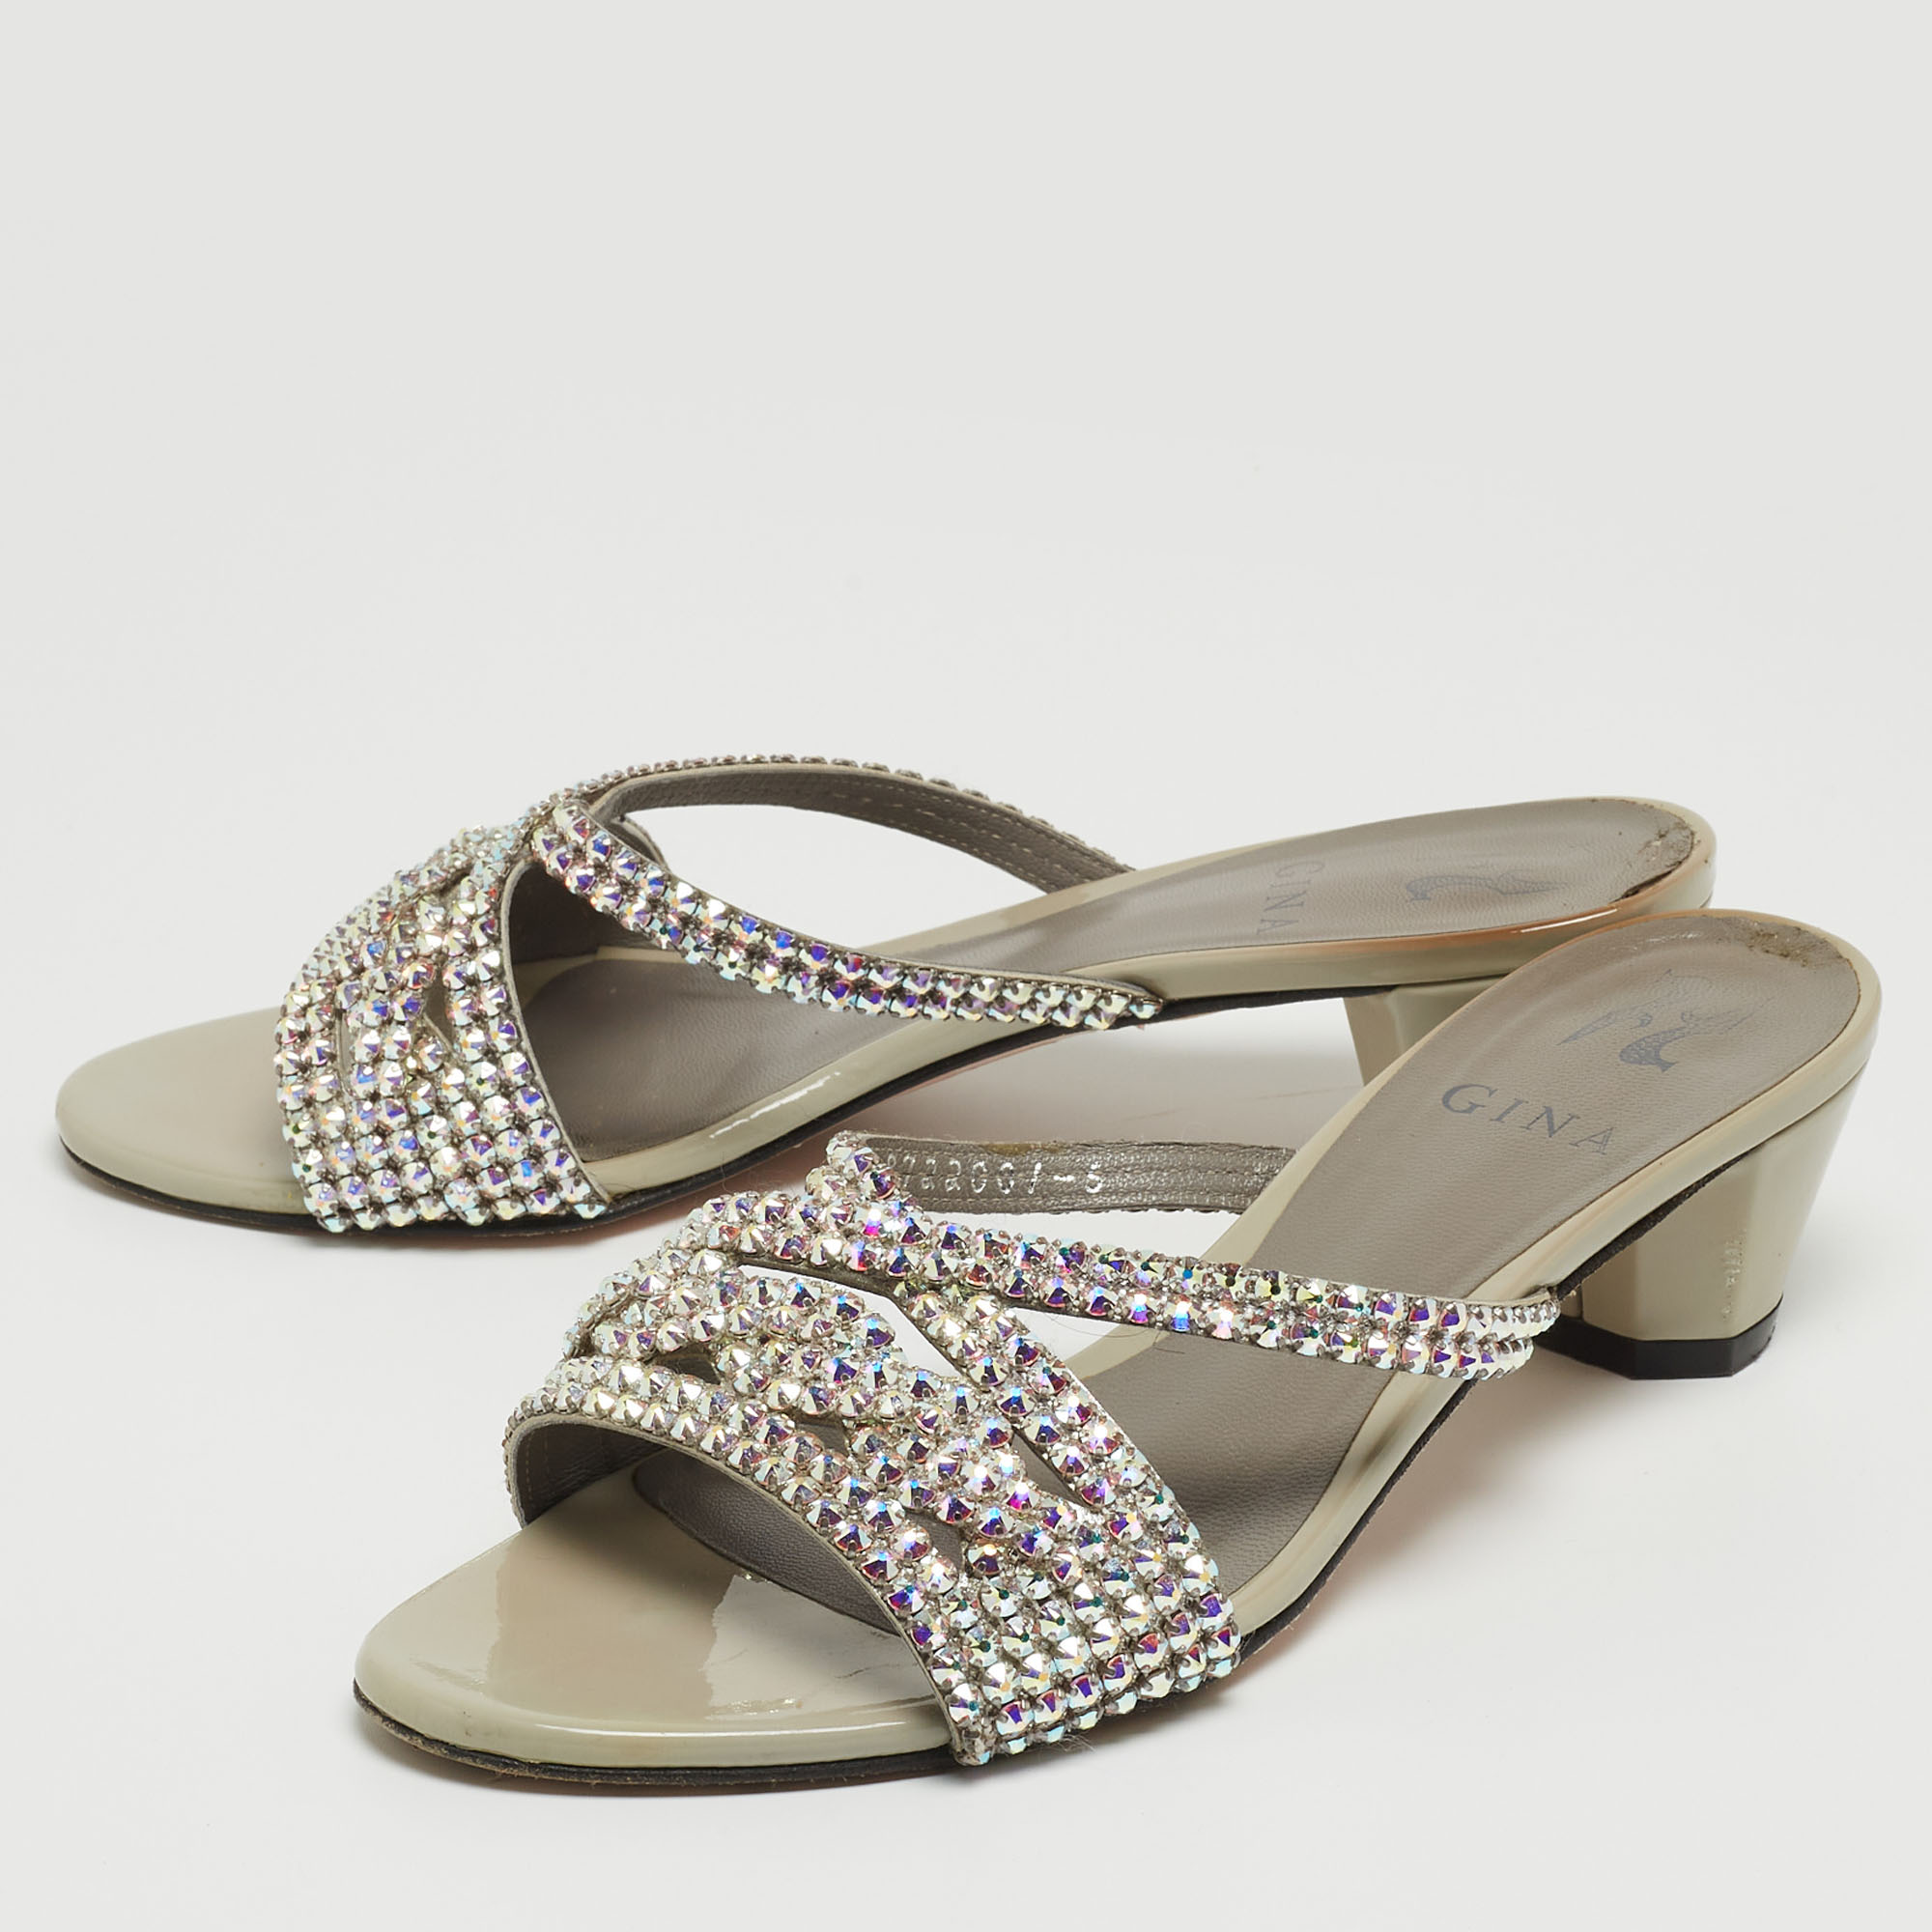 

Gina Grey Patent Leather Crystal Embellished Slide Sandals Size